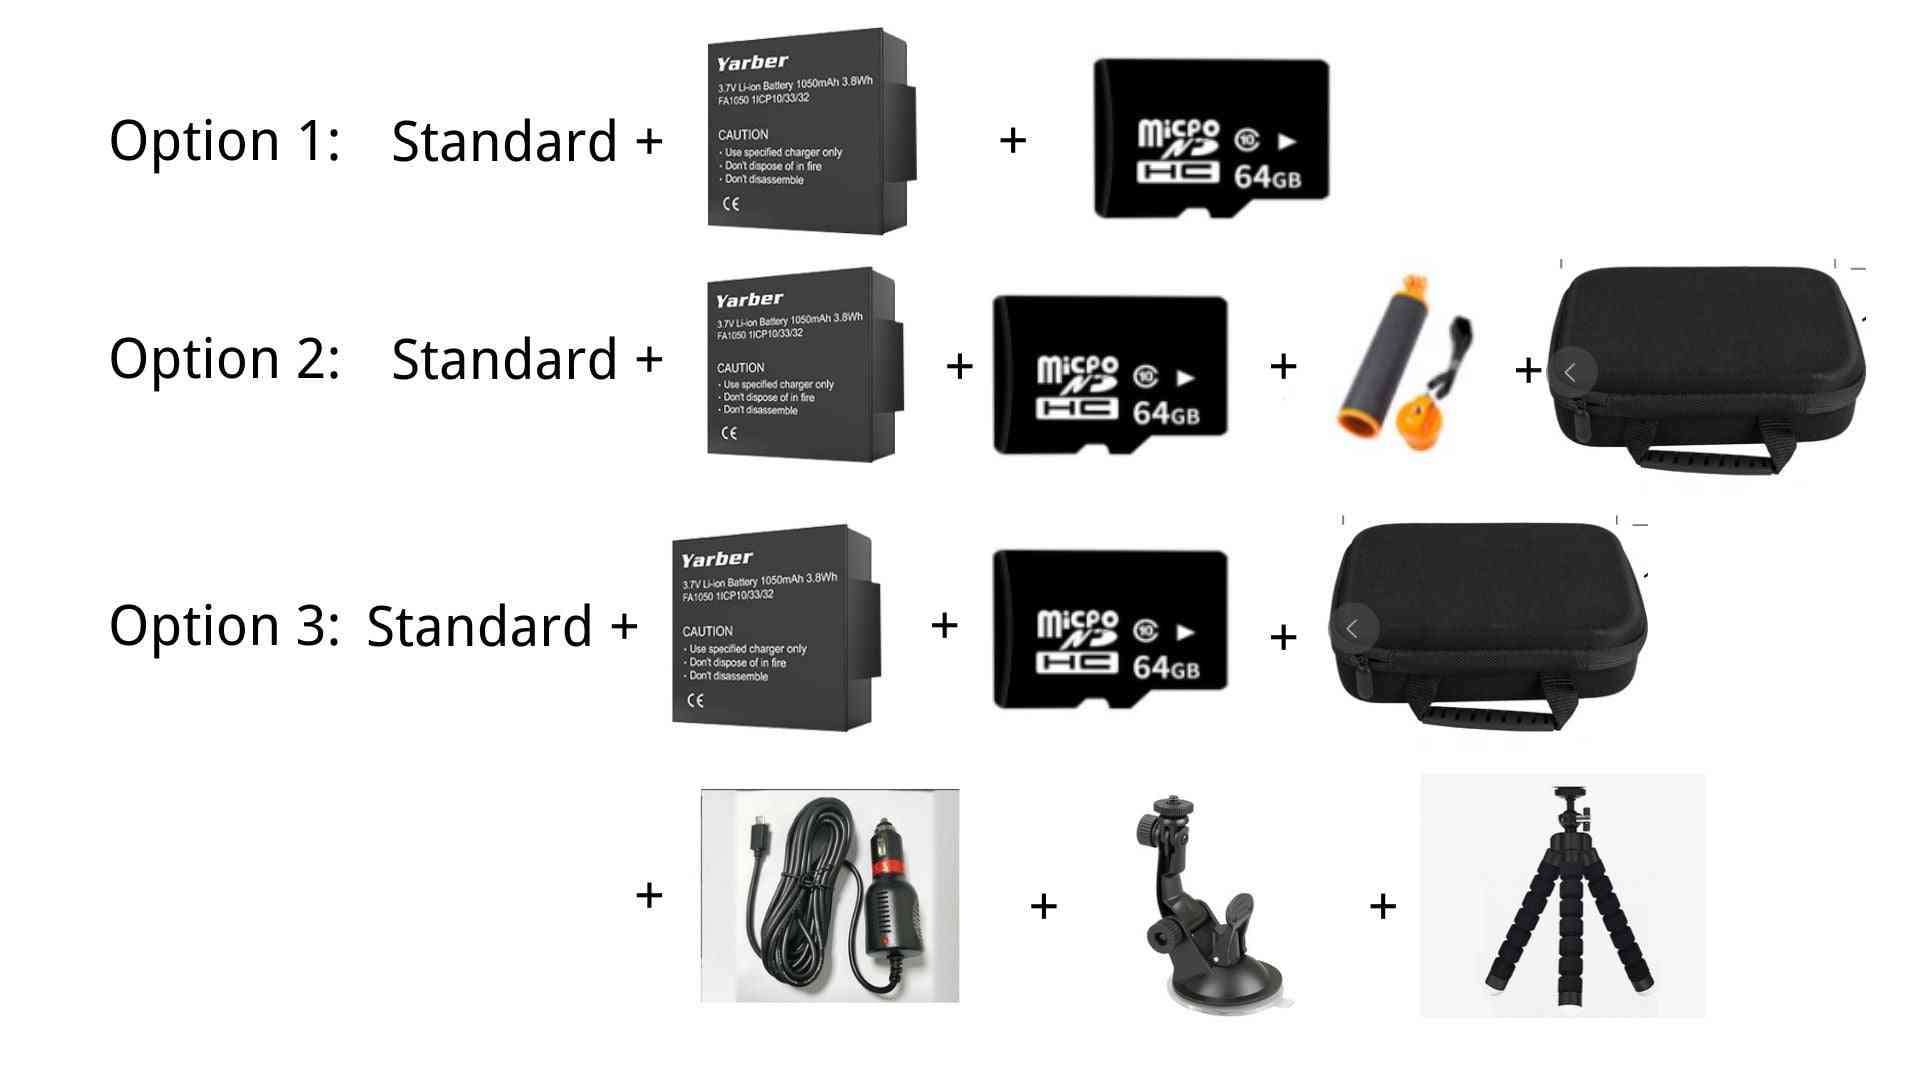 8k akció-sport kamera, wifi 4k 60fps kerékpáros sisak akció-kamerák, 40 m vízálló búvár-videó műszerfal távoli alkalmazással